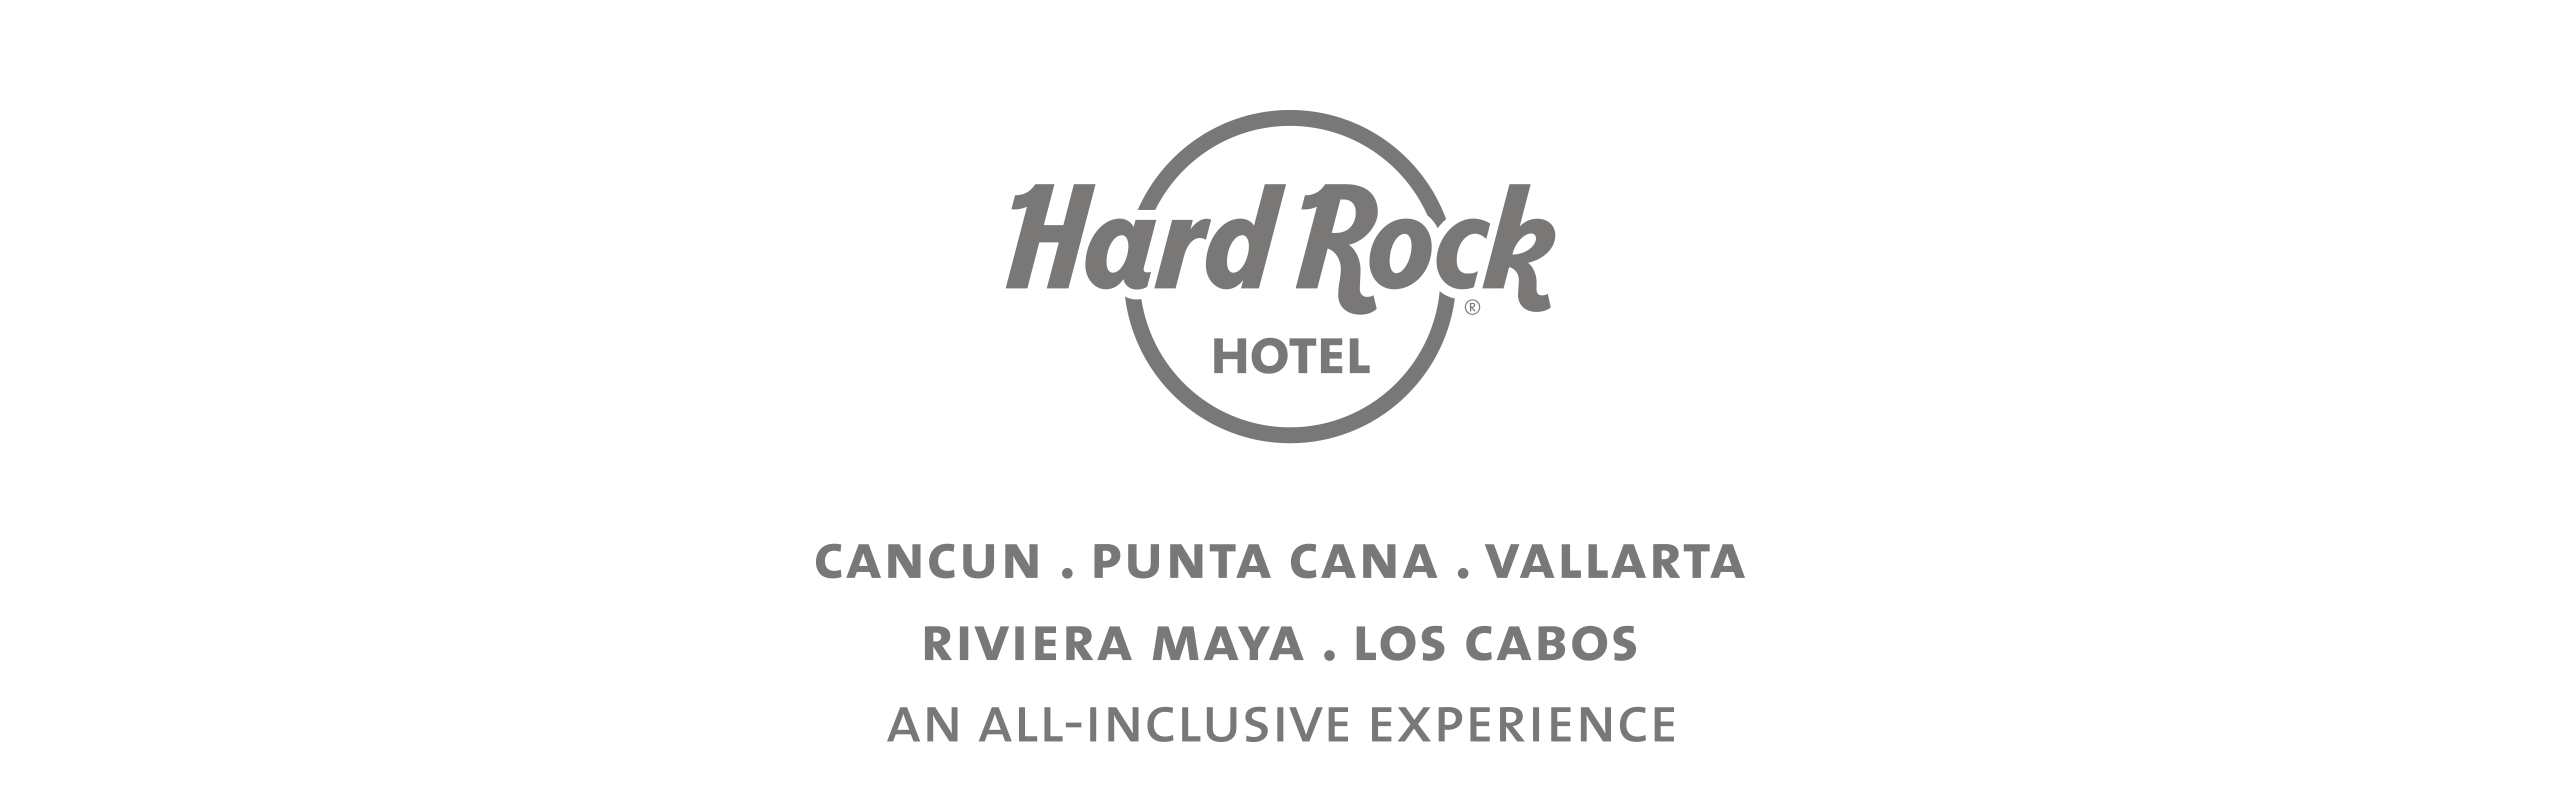 Hard-Rock-Hotel